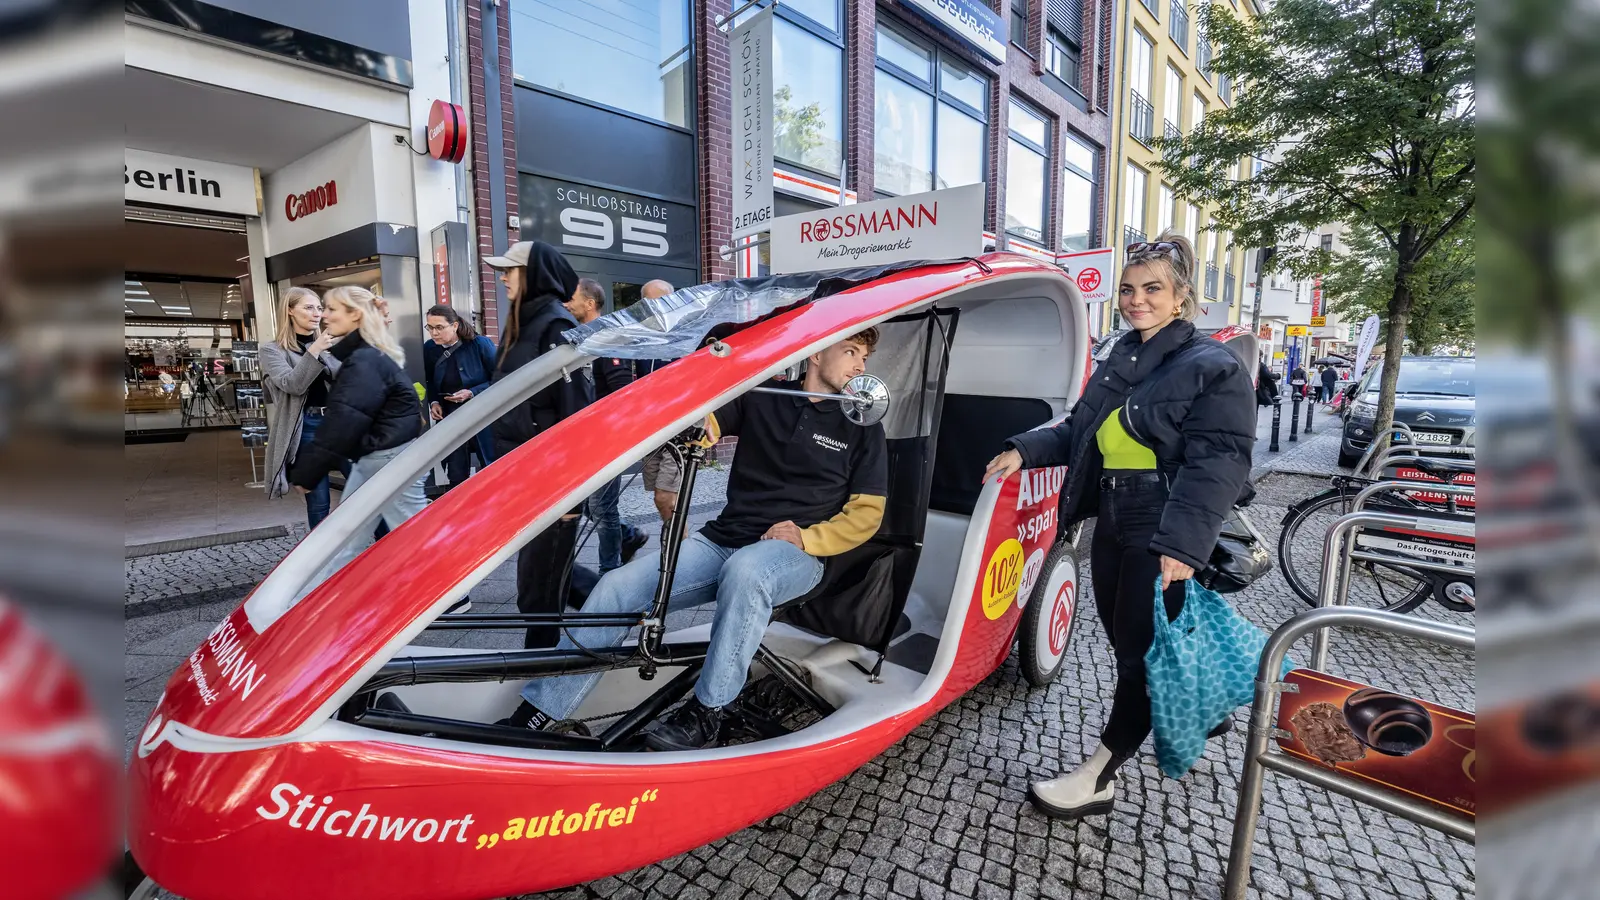 Vor der Berliner Filiale standen Velo-Taxis bereit, um die autofreien Einkäufer nach Hause zu chauffieren. (Foto: privat)